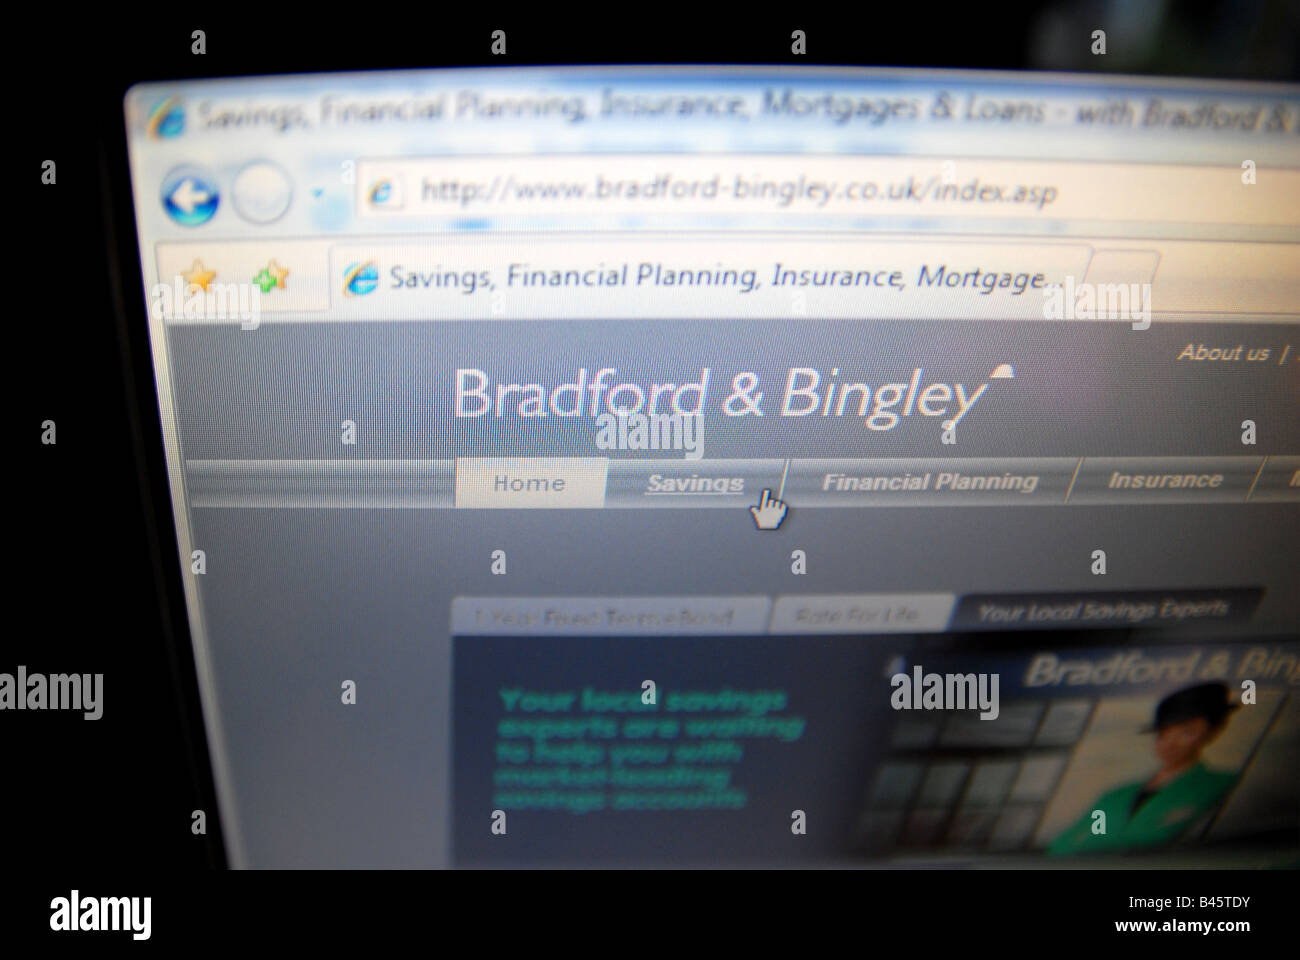 Bradford e bingley website Foto Stock